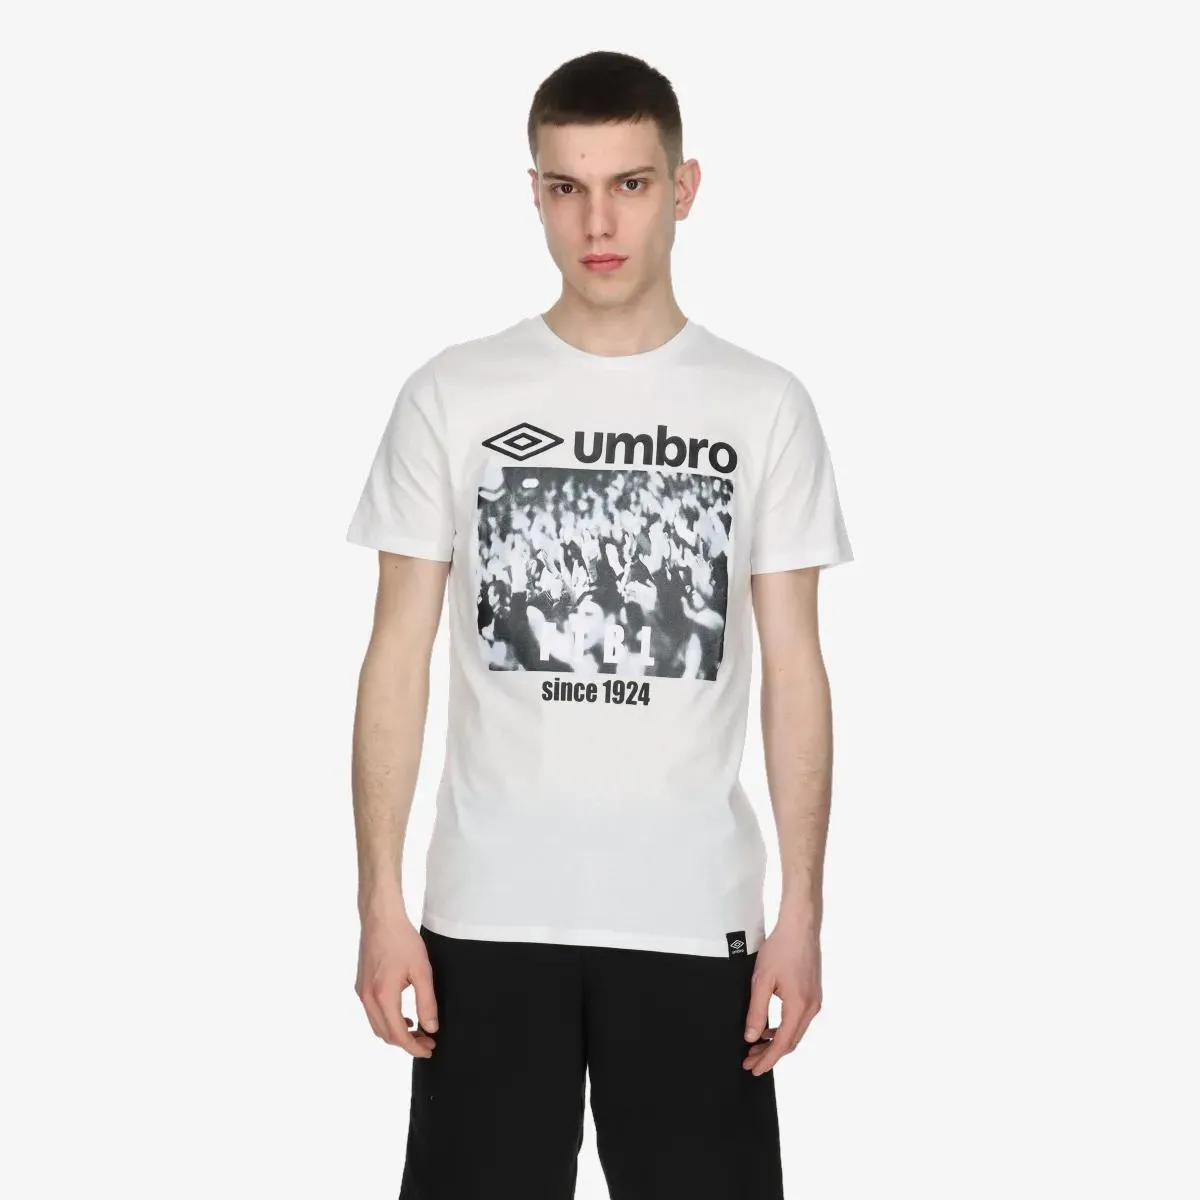 Umbro T-shirt Fans 